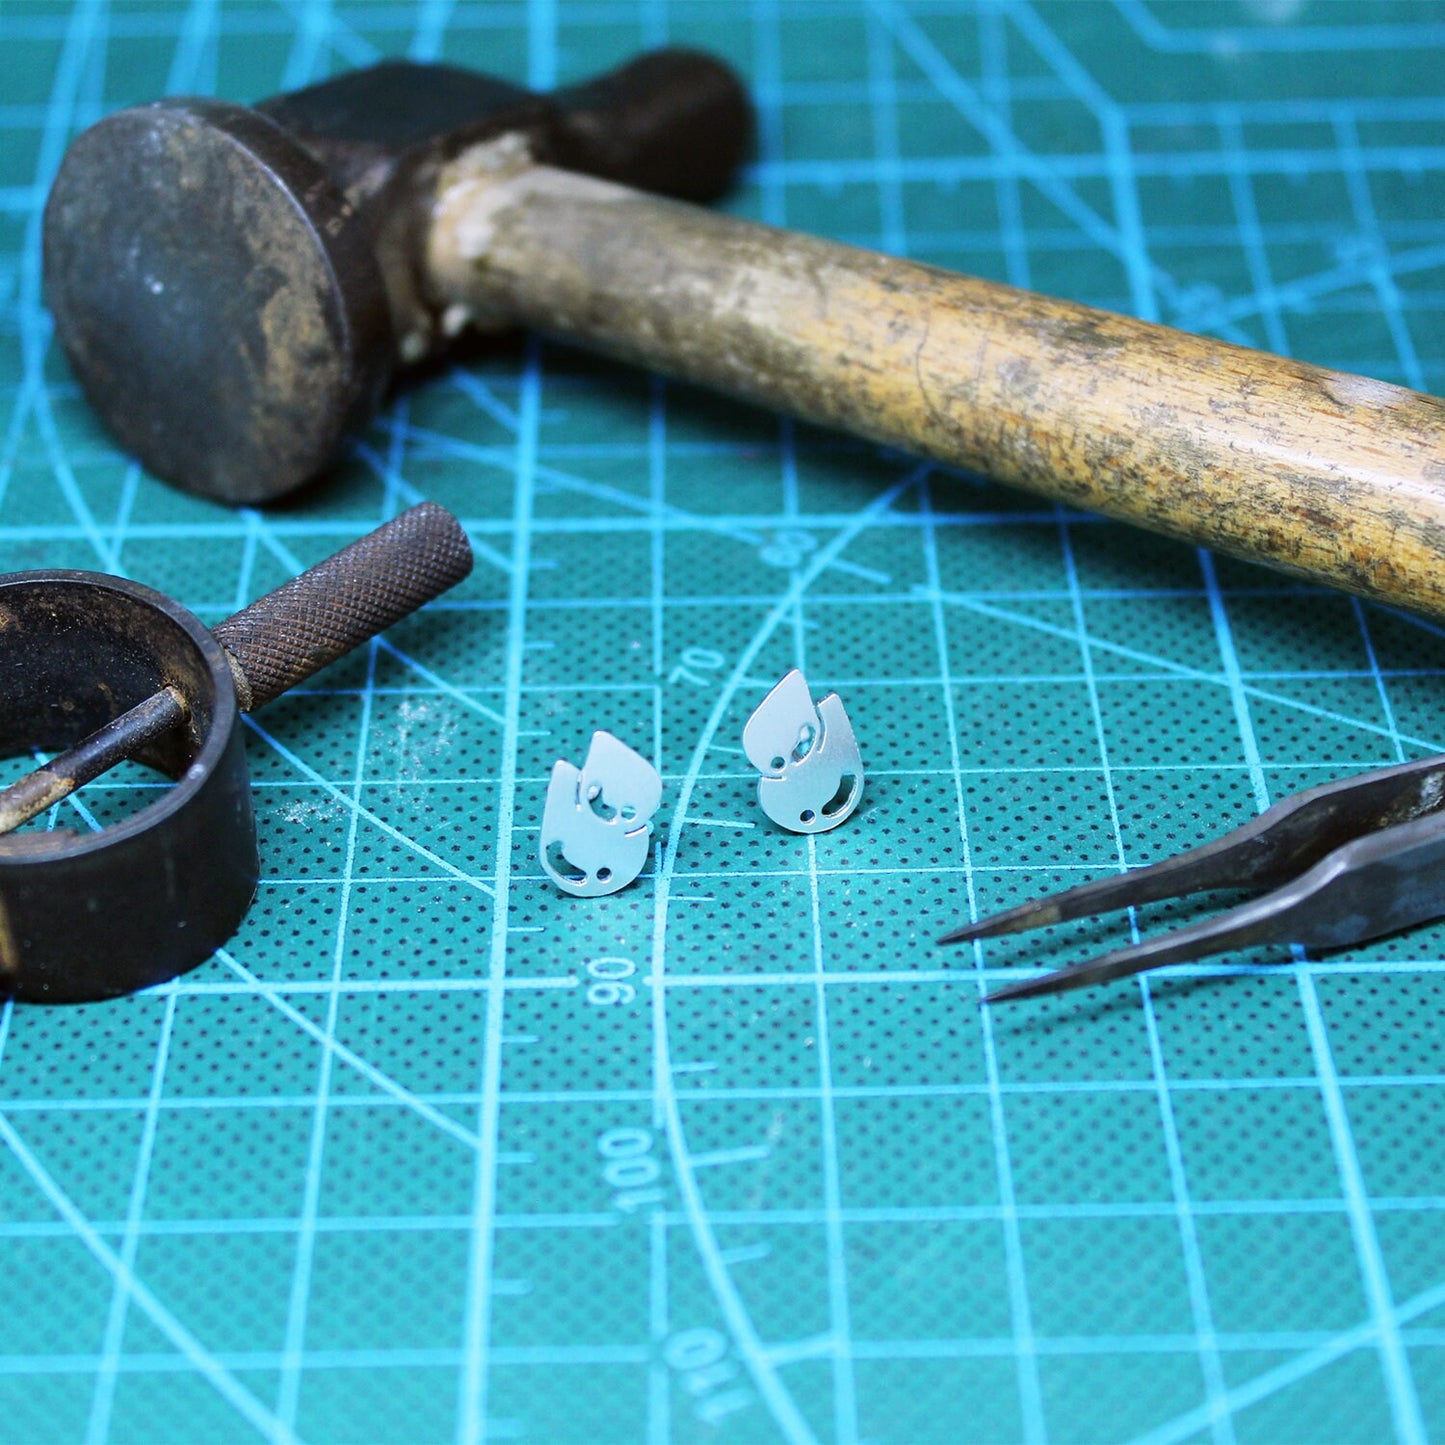 Dangerdoll earrings in 925 silver.